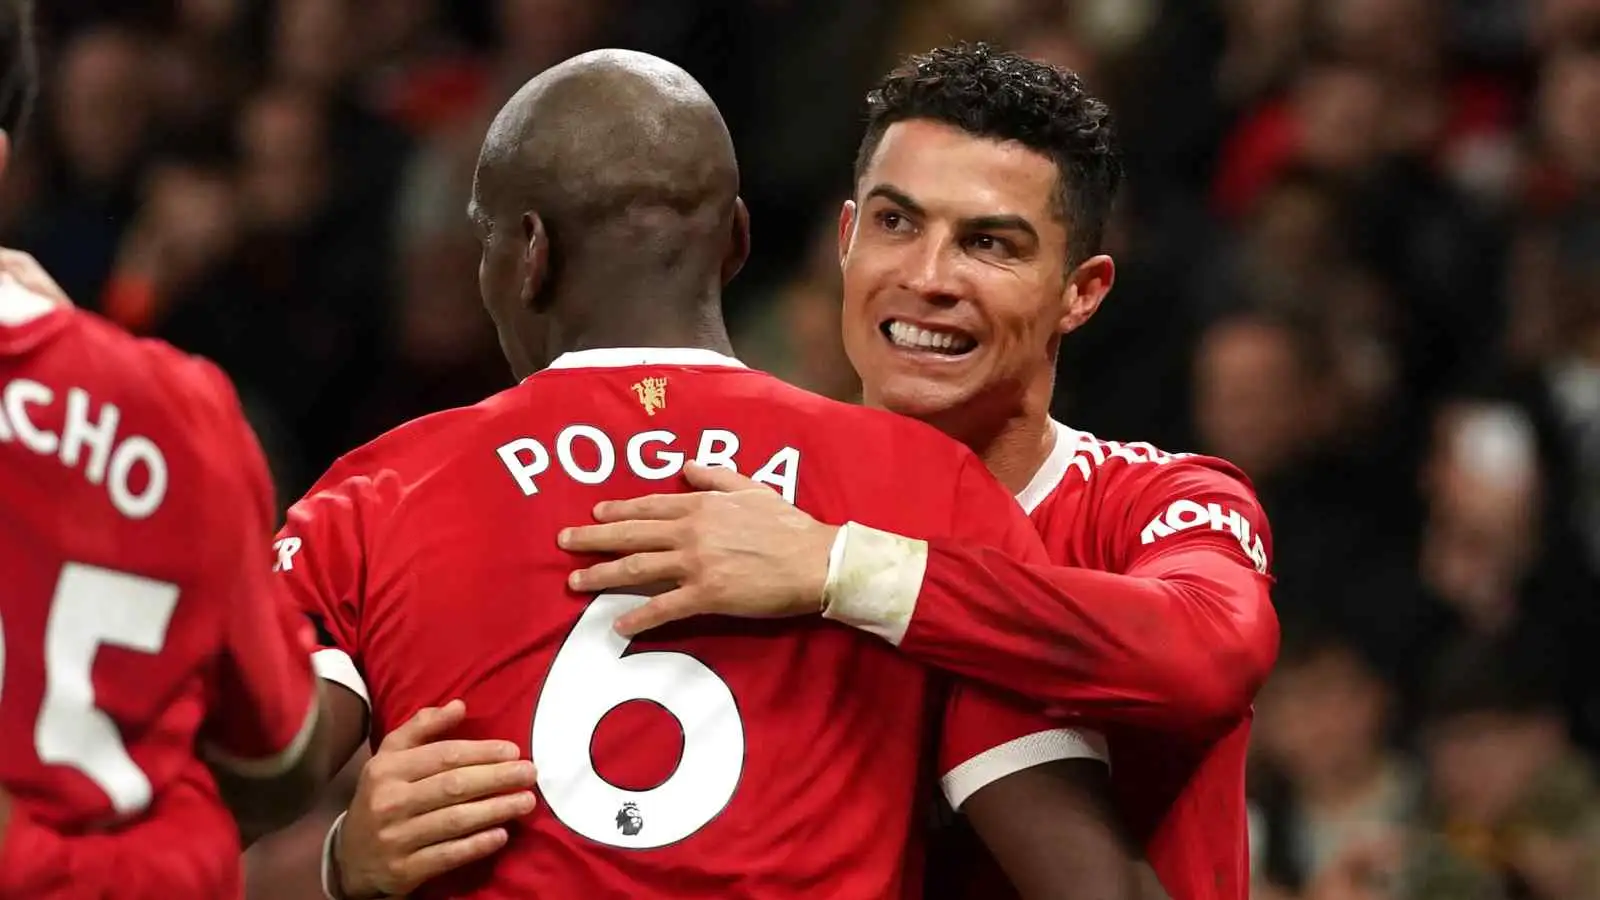 Paul Pogba and Cristiano Ronaldo embrace